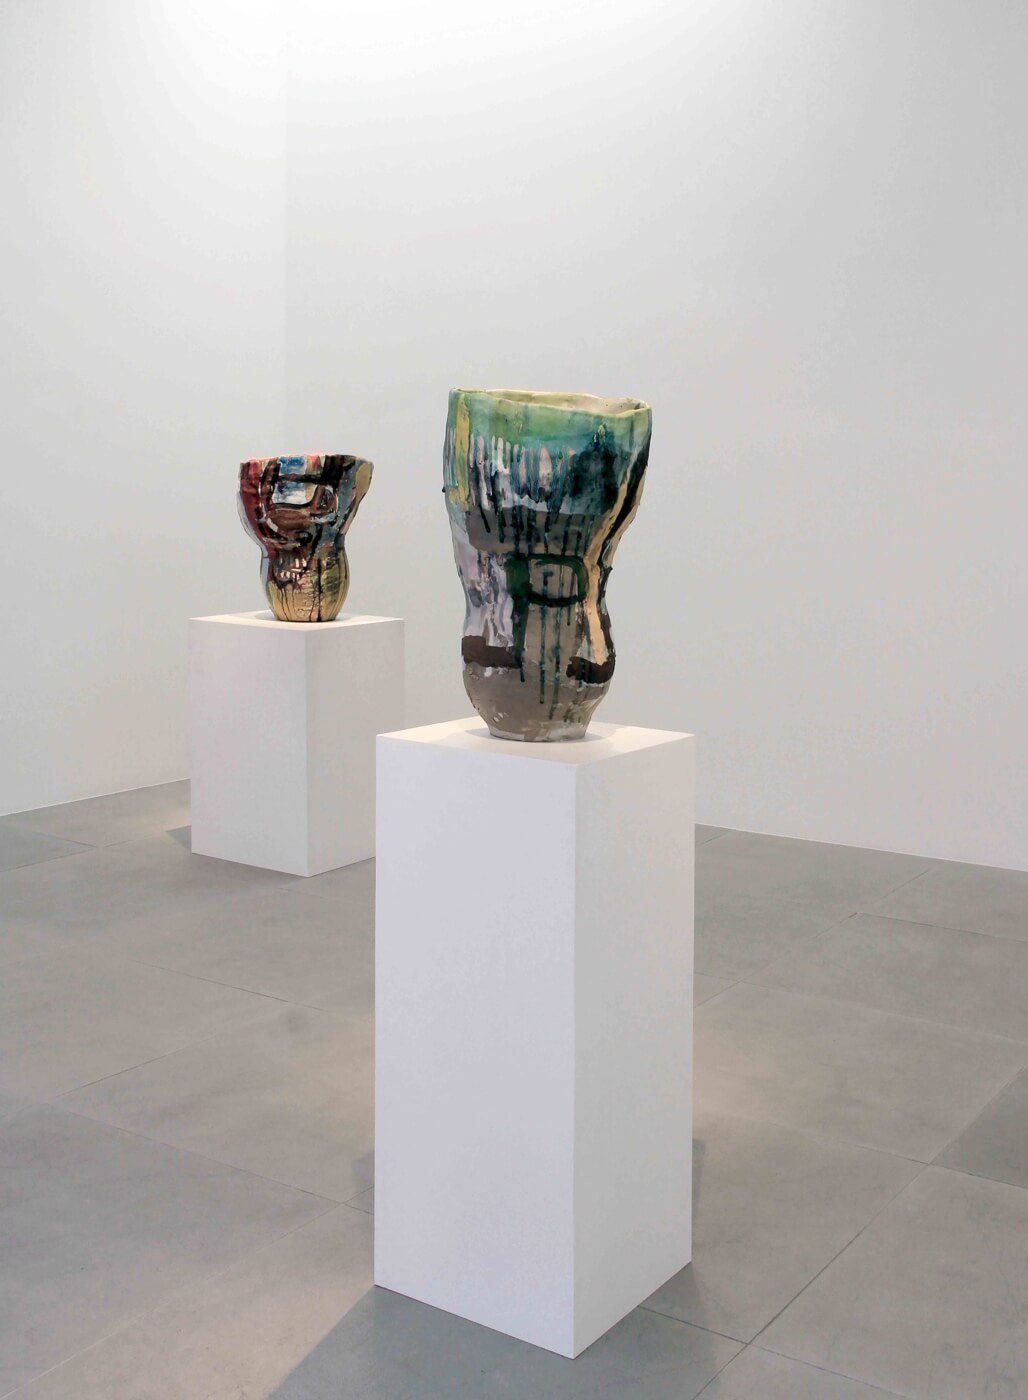 Roger Herman | Ceramics | Carpenters Workshop Gallery